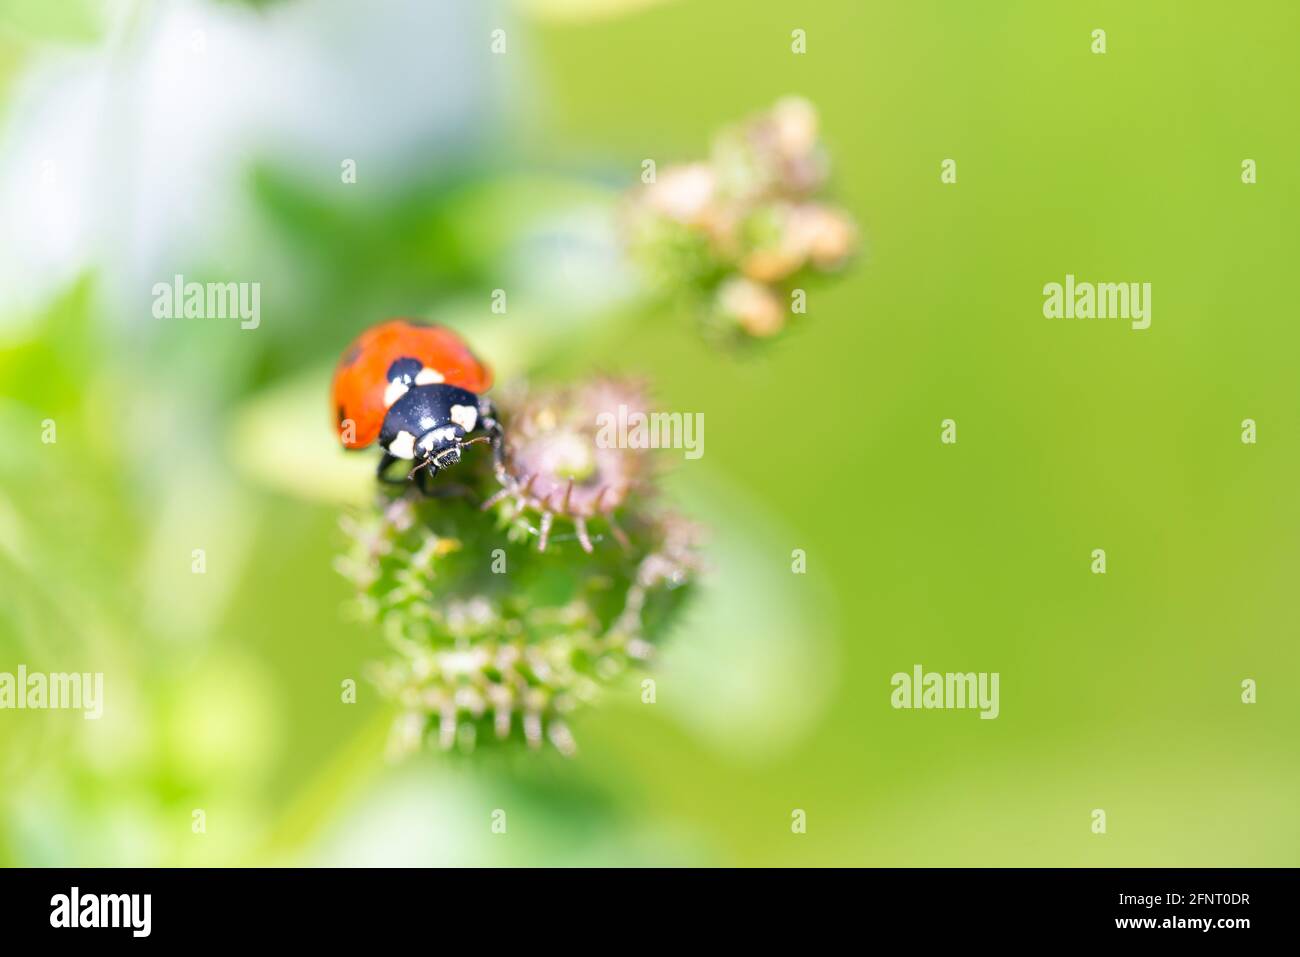 Sette Ladybird macchiato o Ladybug (Coccinella septempunctata) strisciando su piante verdi in prato Foto Stock